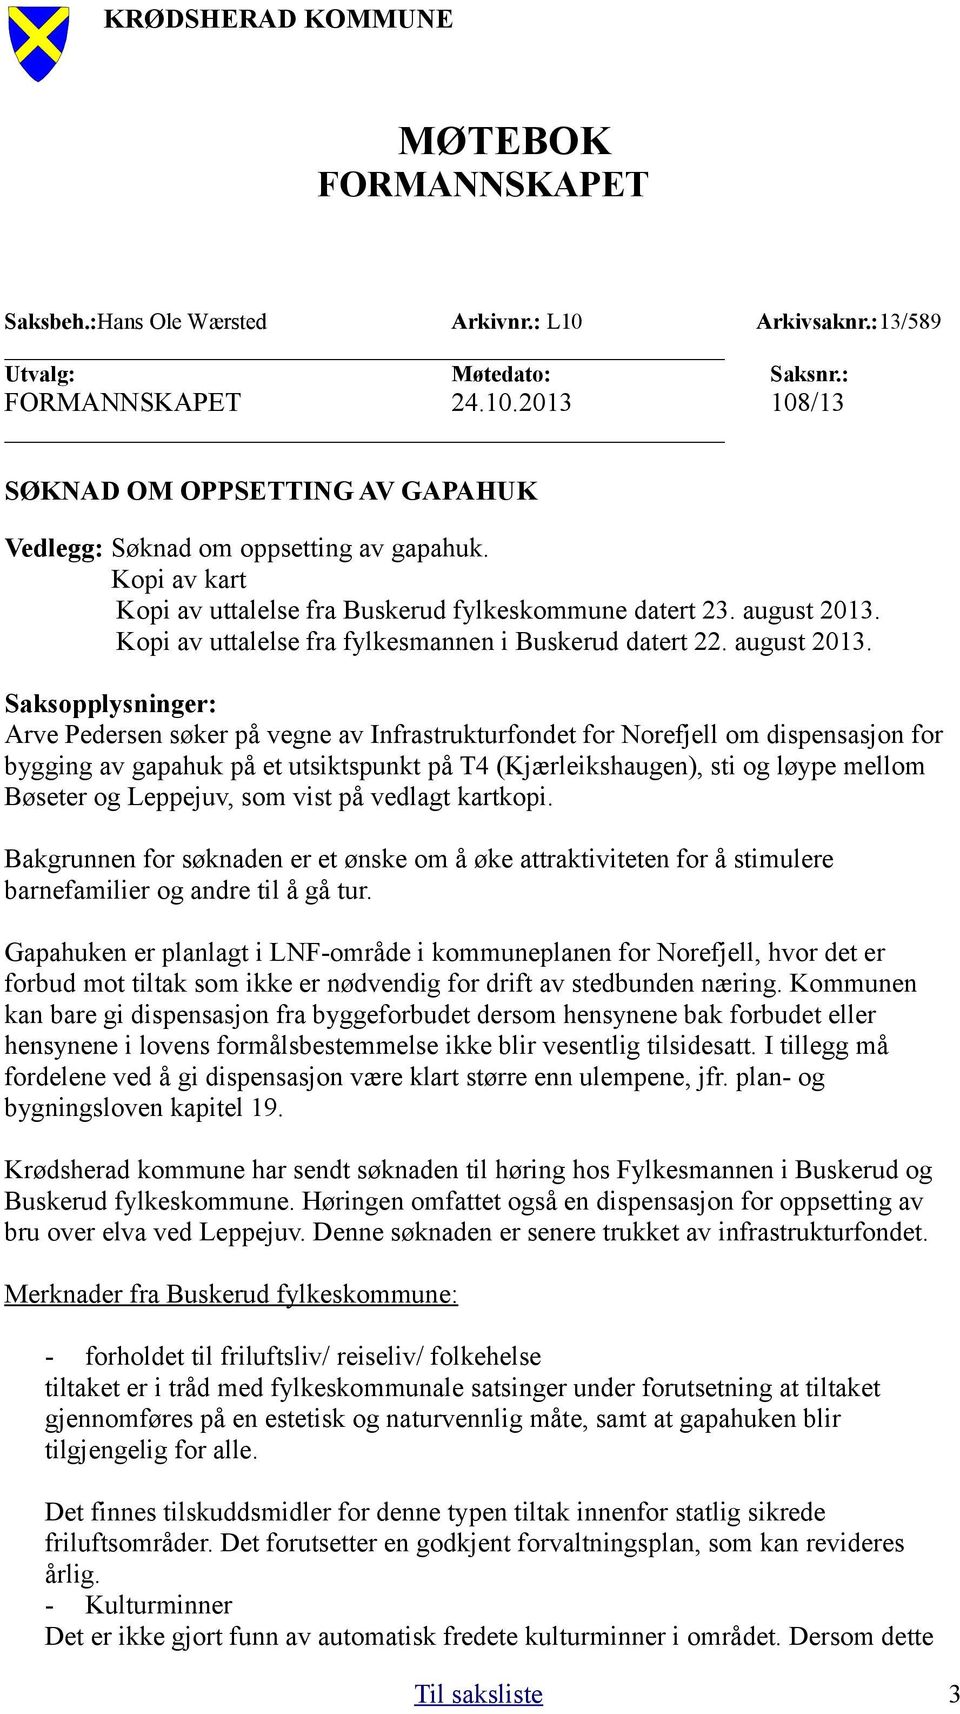 Kopi av uttalelse fra fylkesmannen i Buskerud datert 22. august 2013.